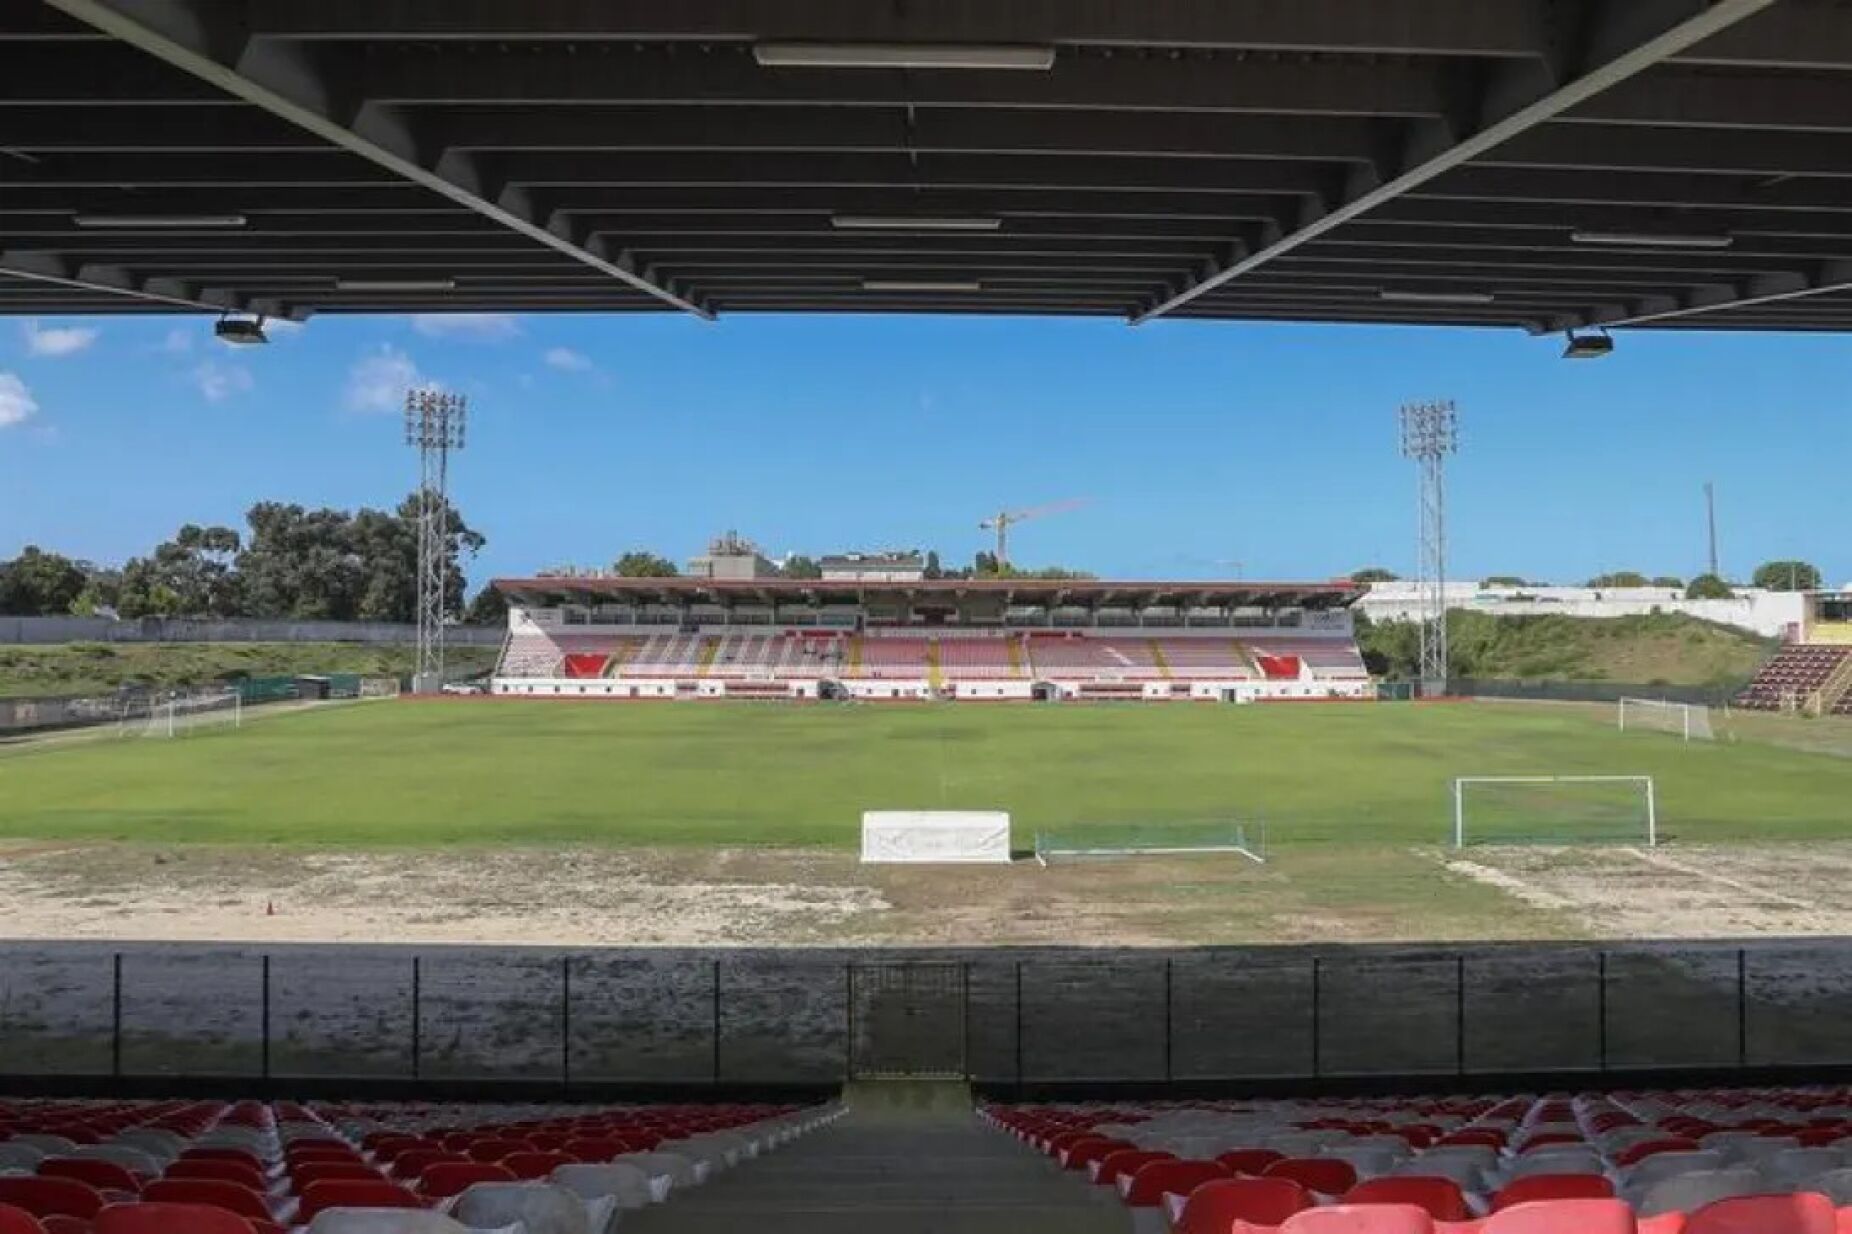 Estádios e Campos de Futebol - Câmara Municipal de Felgueiras